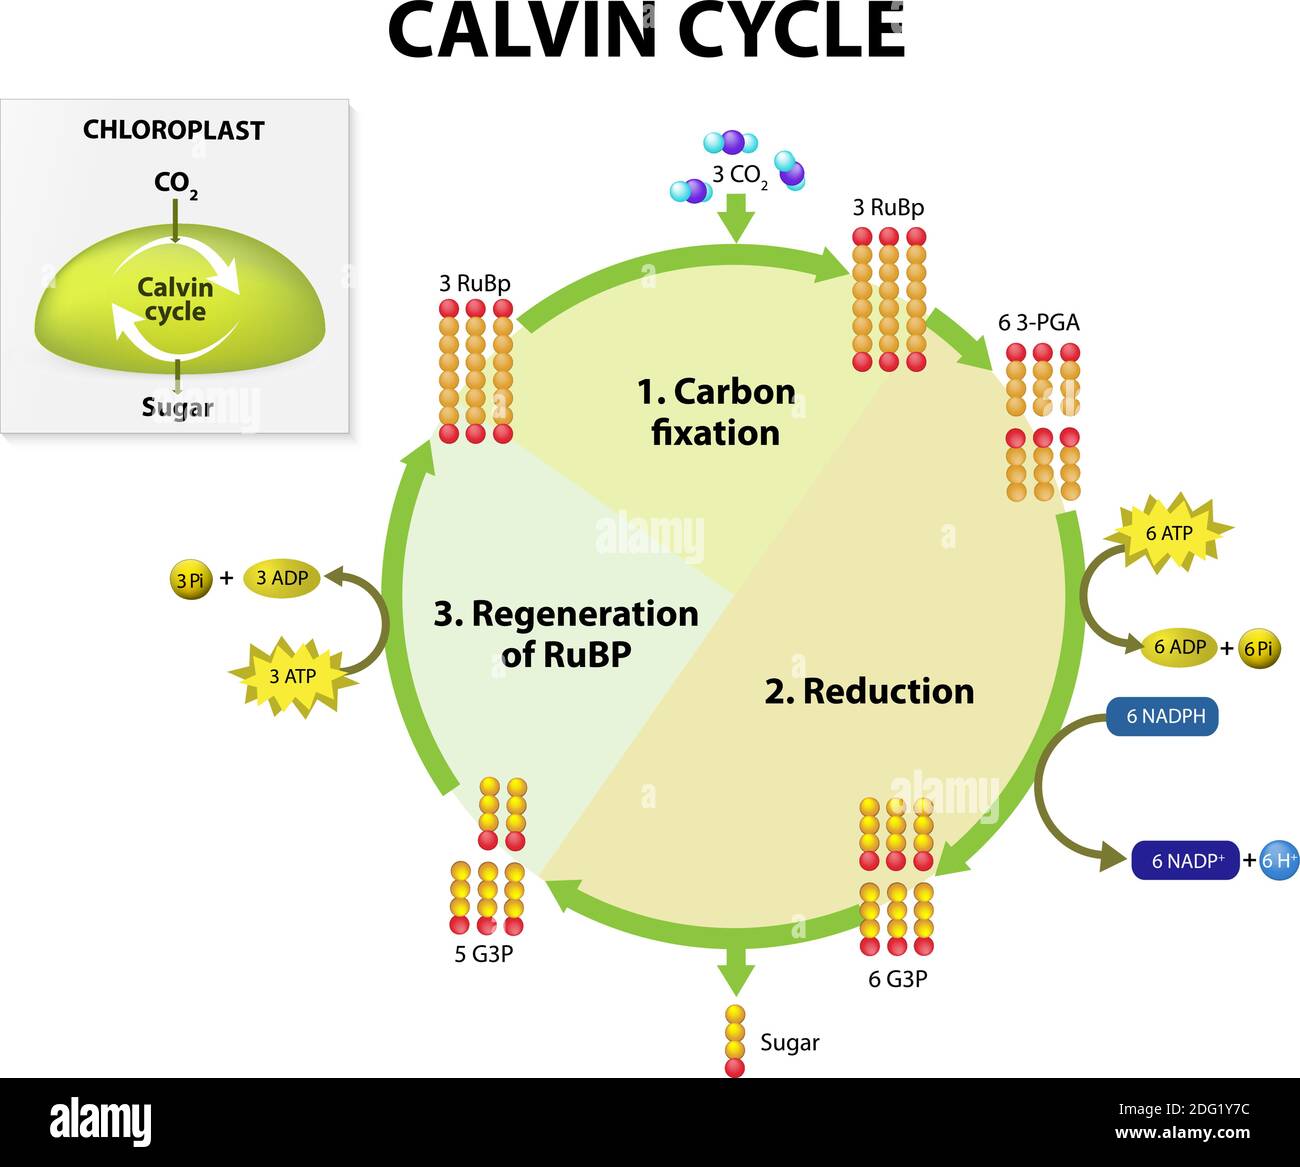 Photosynthese. calvin-Zyklus in Chloroplast. Calvin-Zyklus macht Zucker aus Kohlendioxid. Dieses Diagramm zeigt vereinfachte Darstellungen Stock Vektor